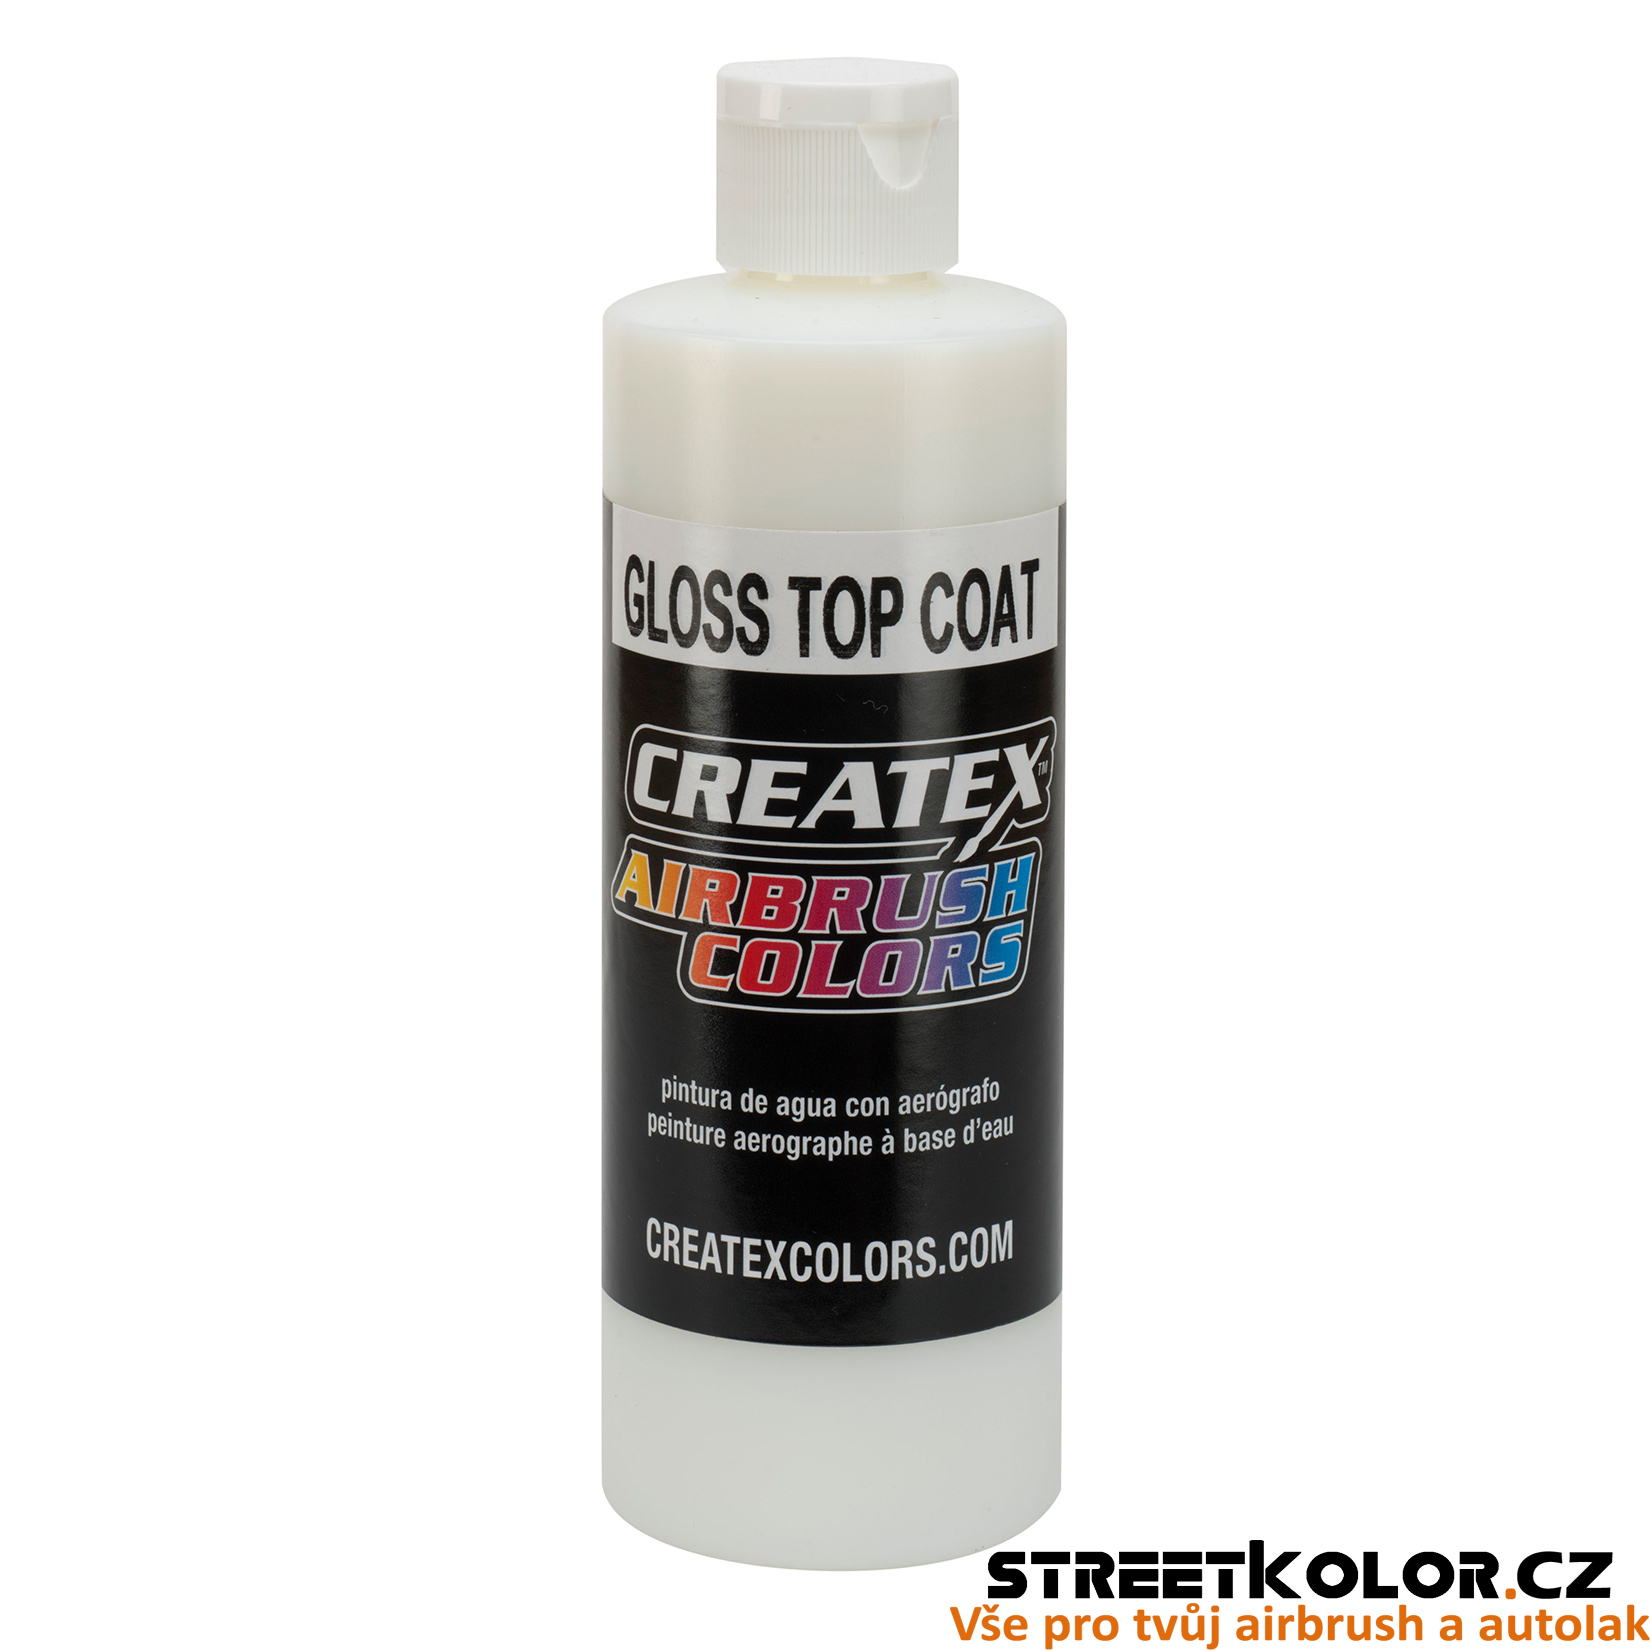 CreateX 5604 Lesklý lak - Gloss Top Coat 120ml